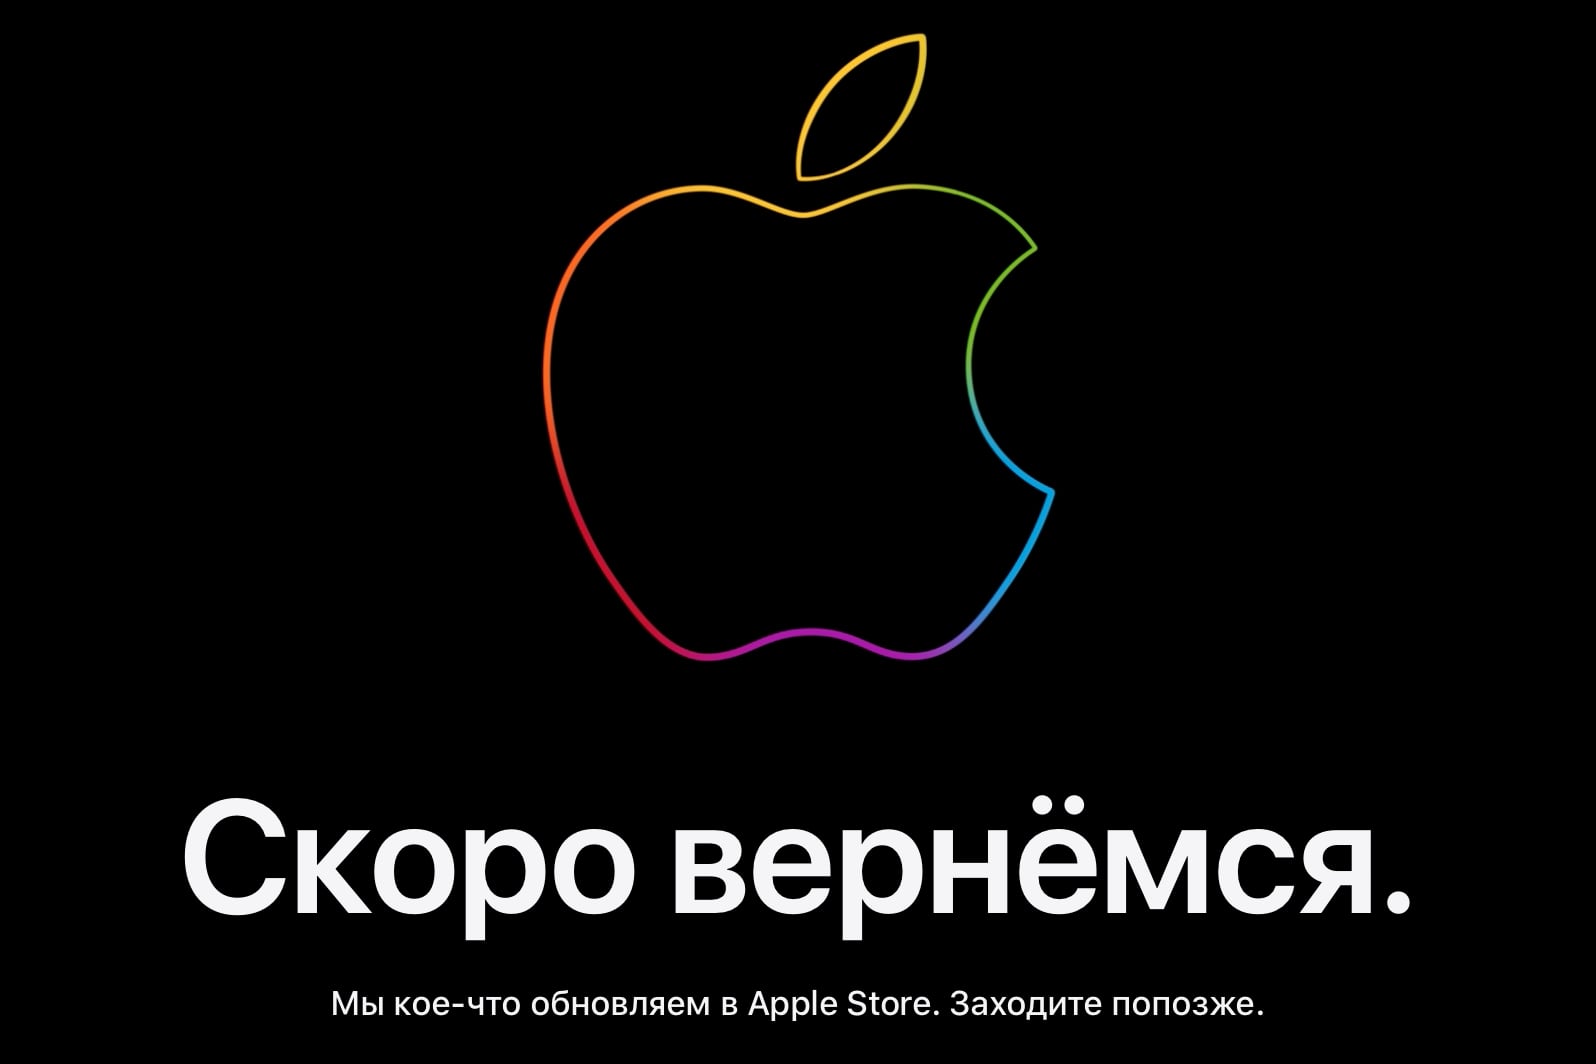 Apple Store закрылся на обновление перед сегодняшней презентацией